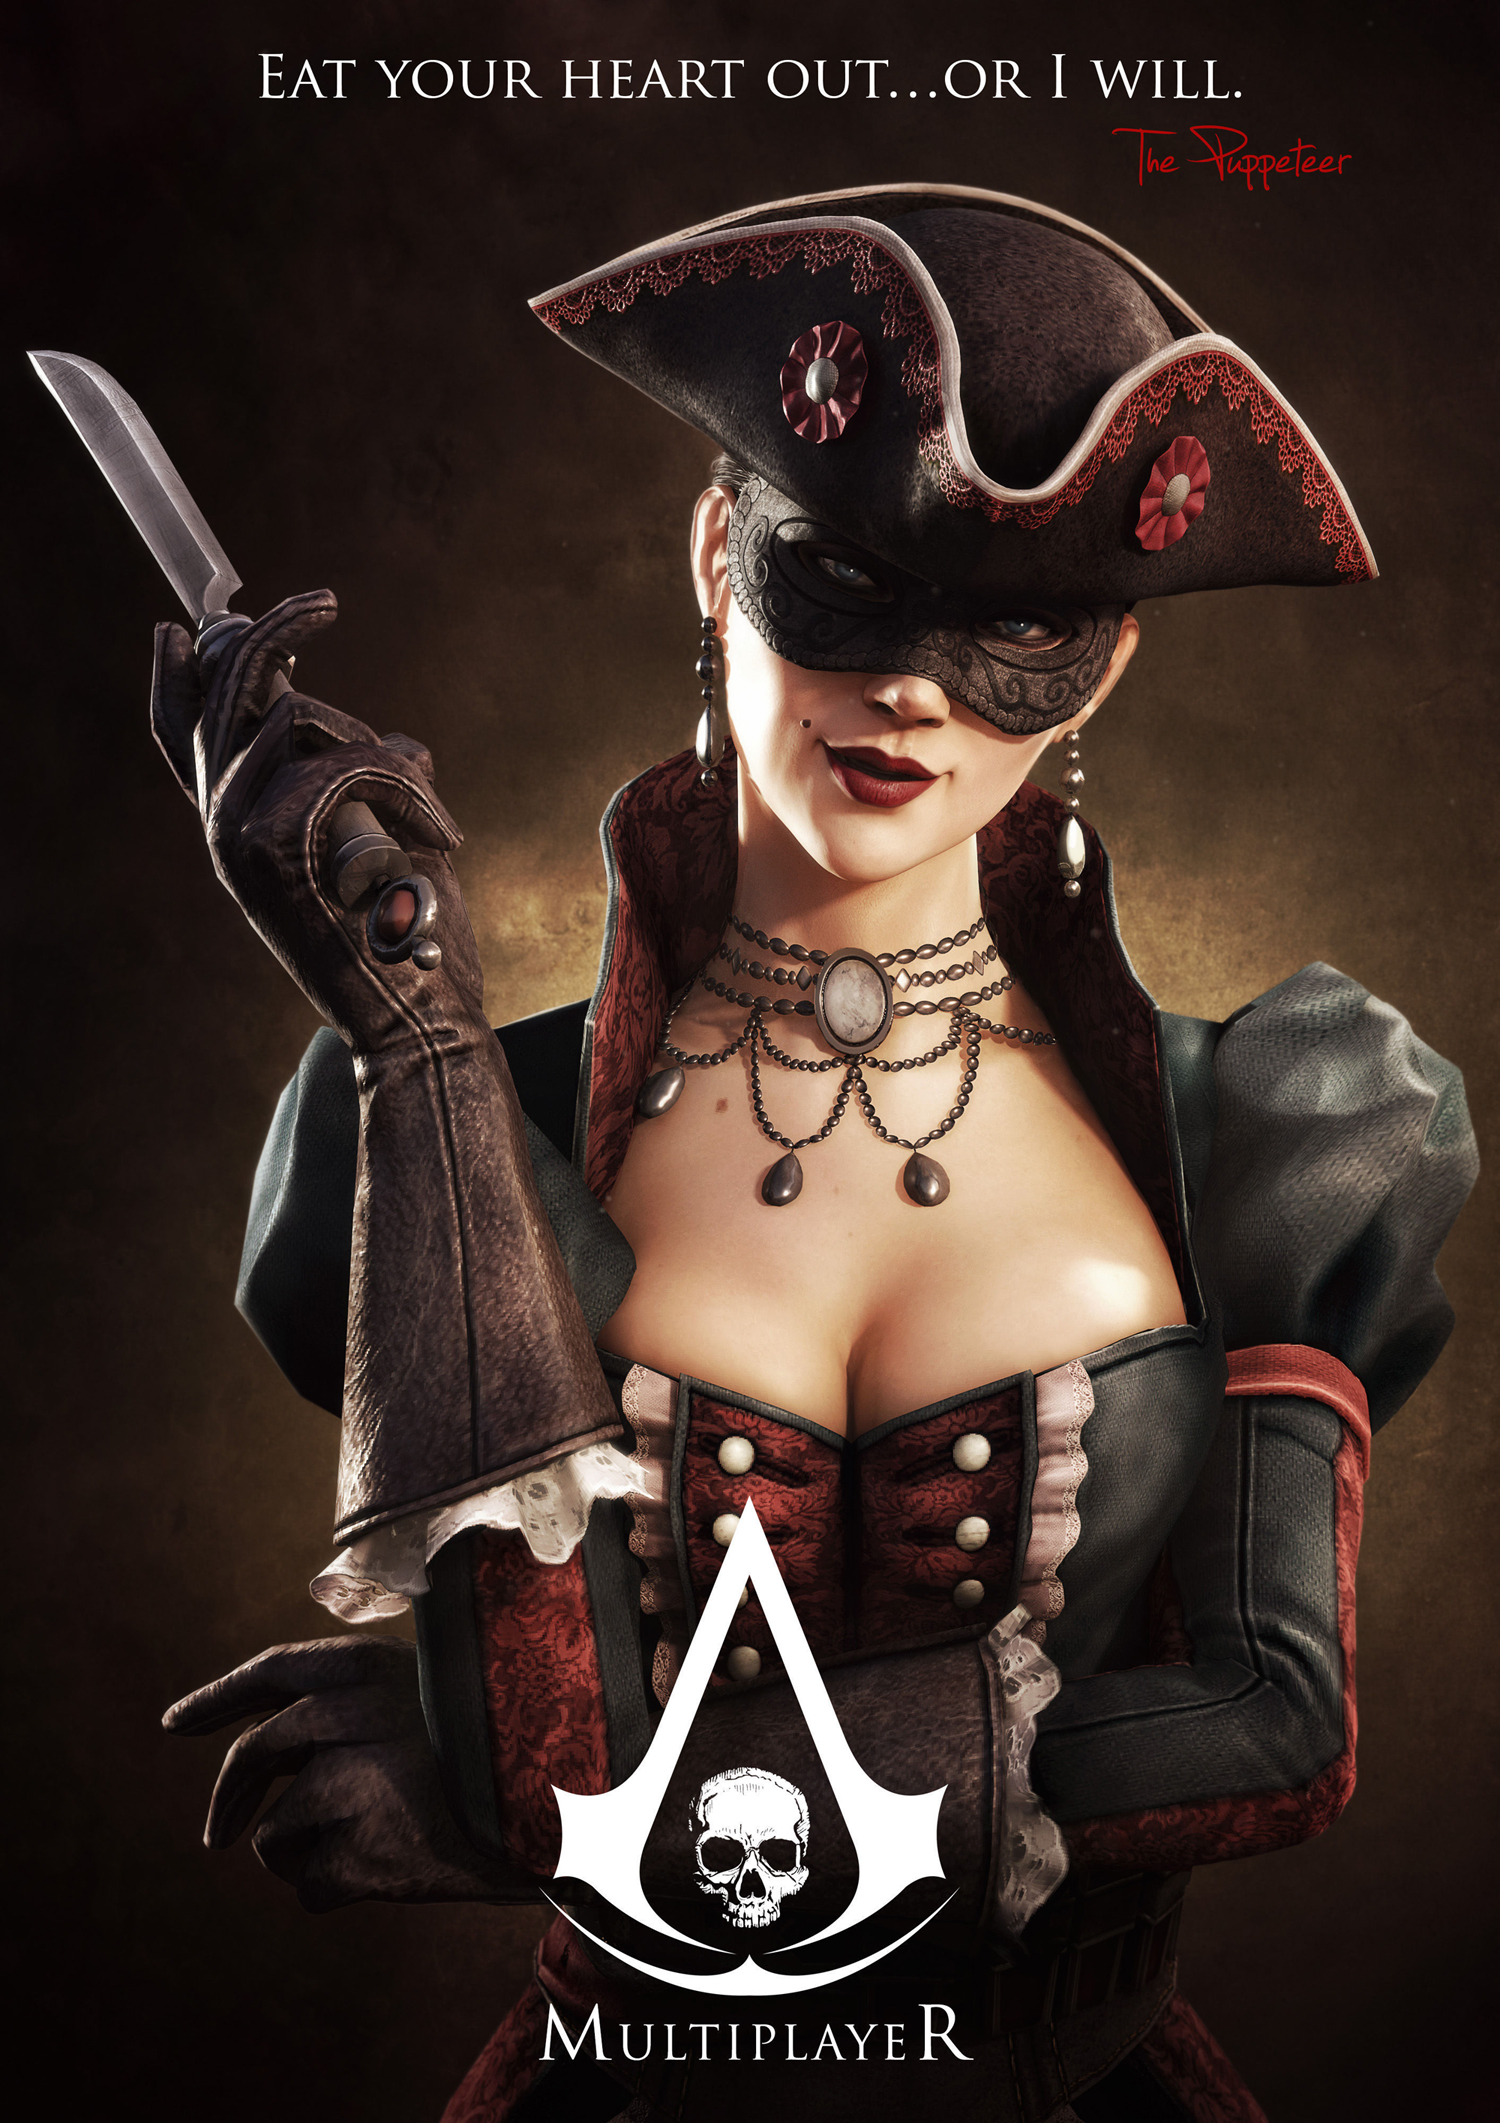 Podívejte se na multiplayer Assassin’s Creed 4 85335